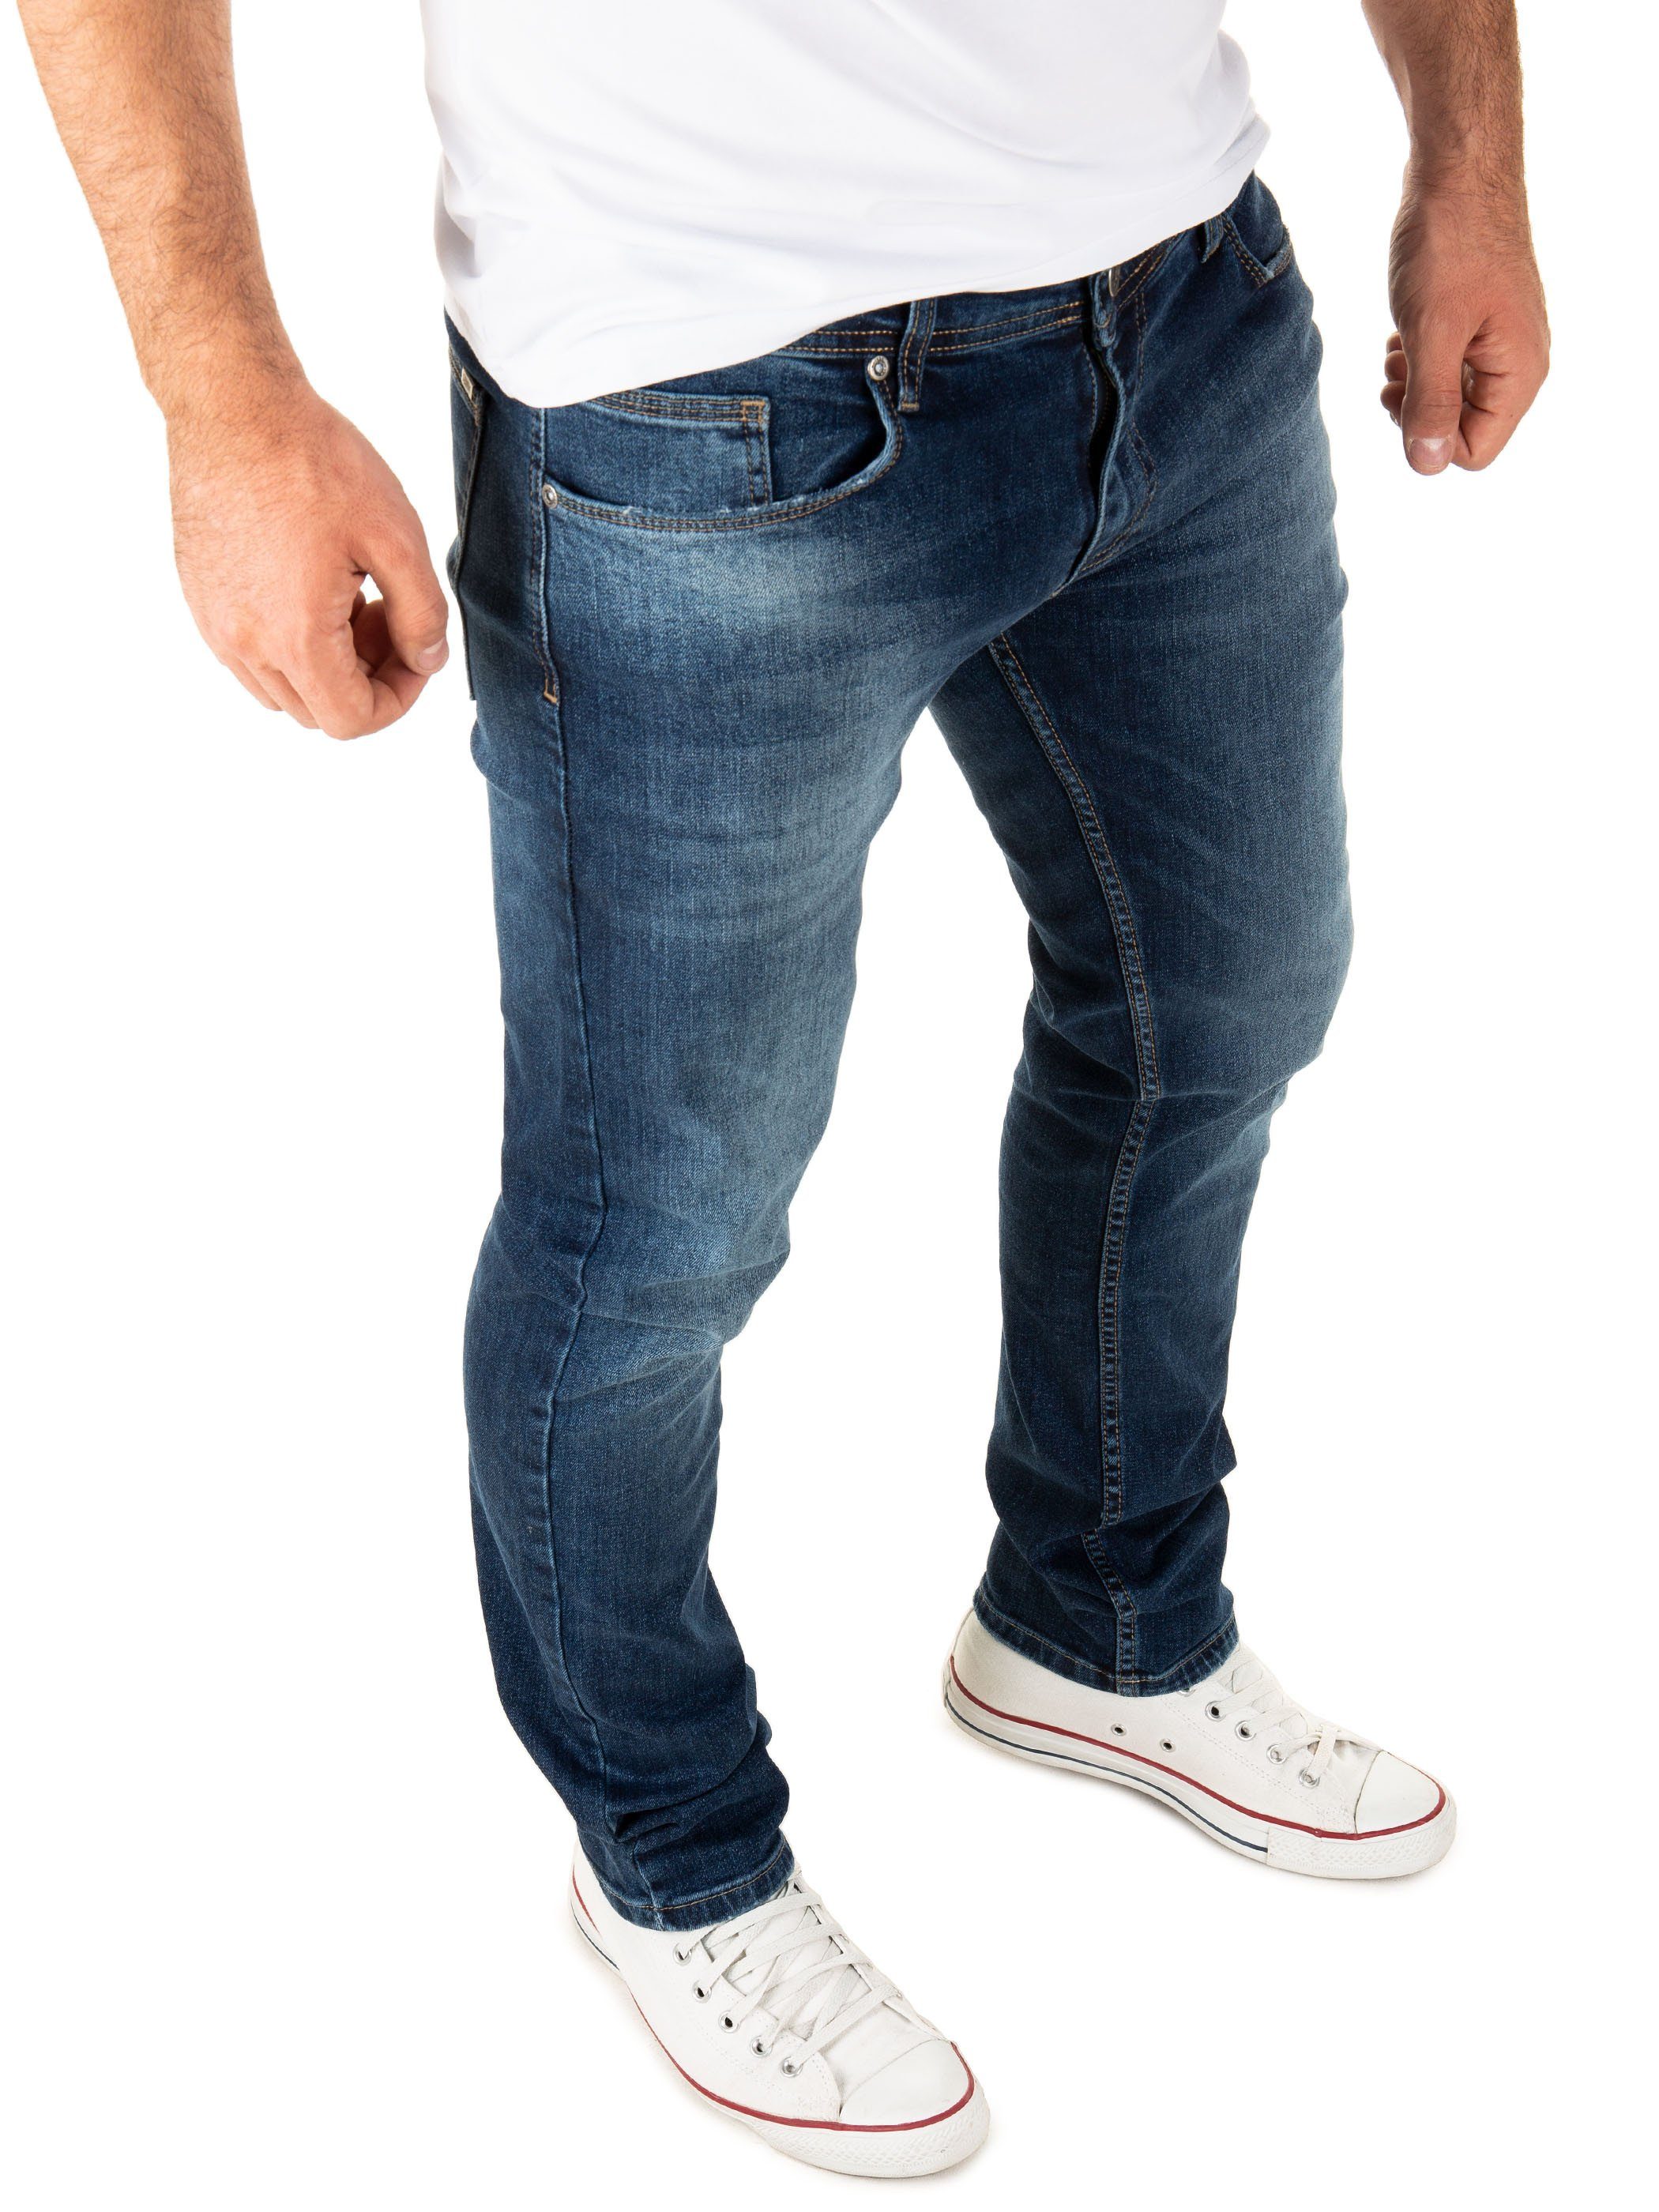 WOTEGA Slim-fit-Jeans Stretch Джинсыhose Justin Herren Джинсы mit Stretchanteil